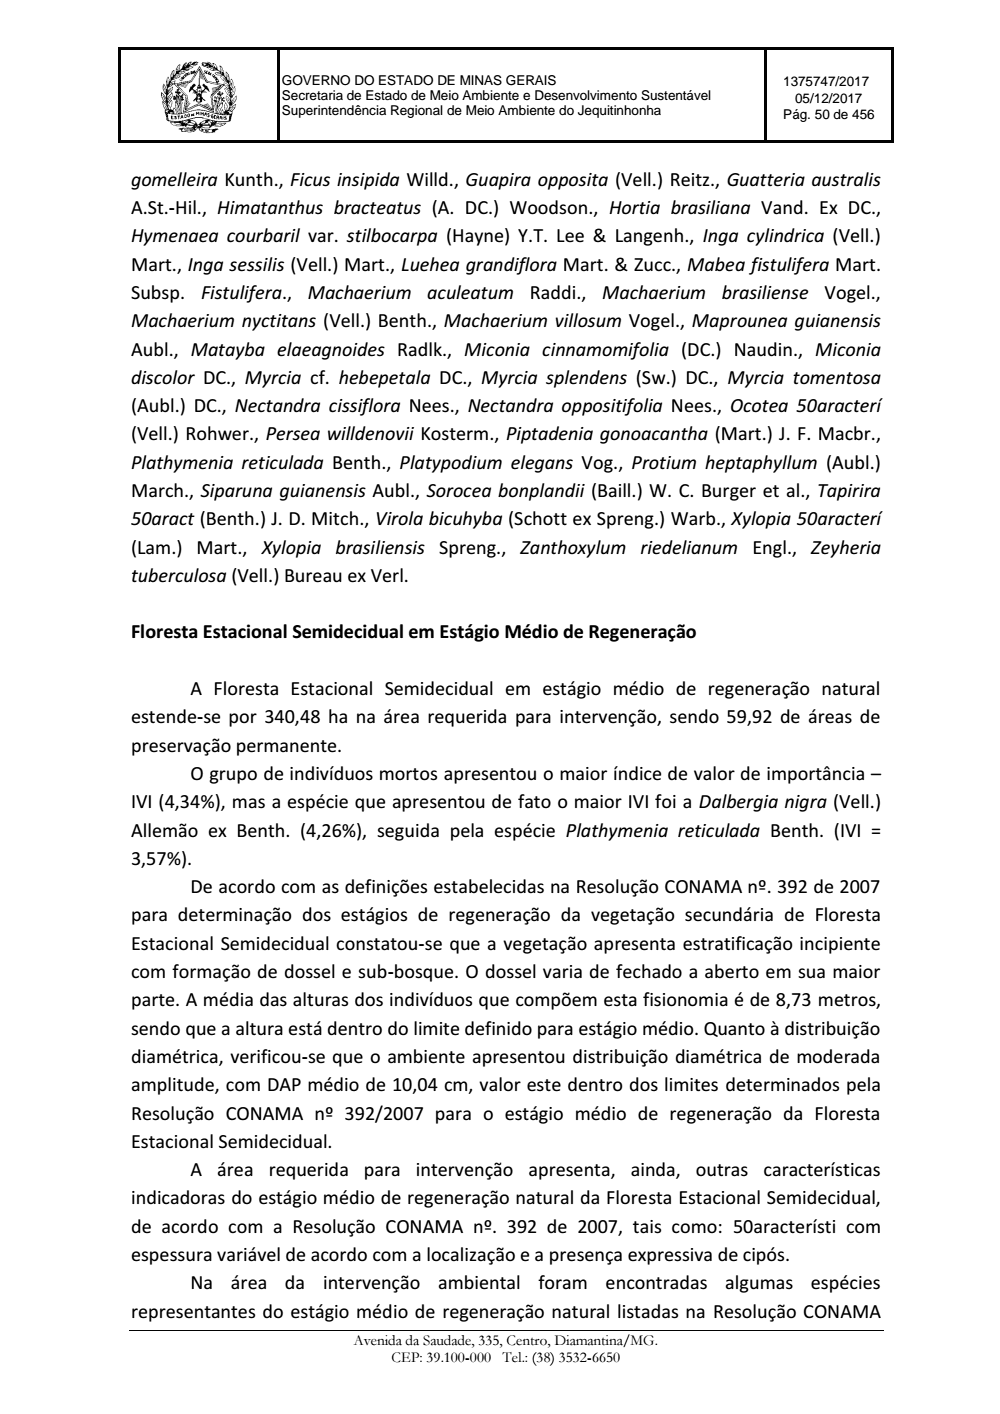 Page 50 from Parecer único da Secretaria de estado de Meio Ambiente e Desenvolvimento Sustentável (SEMAD)